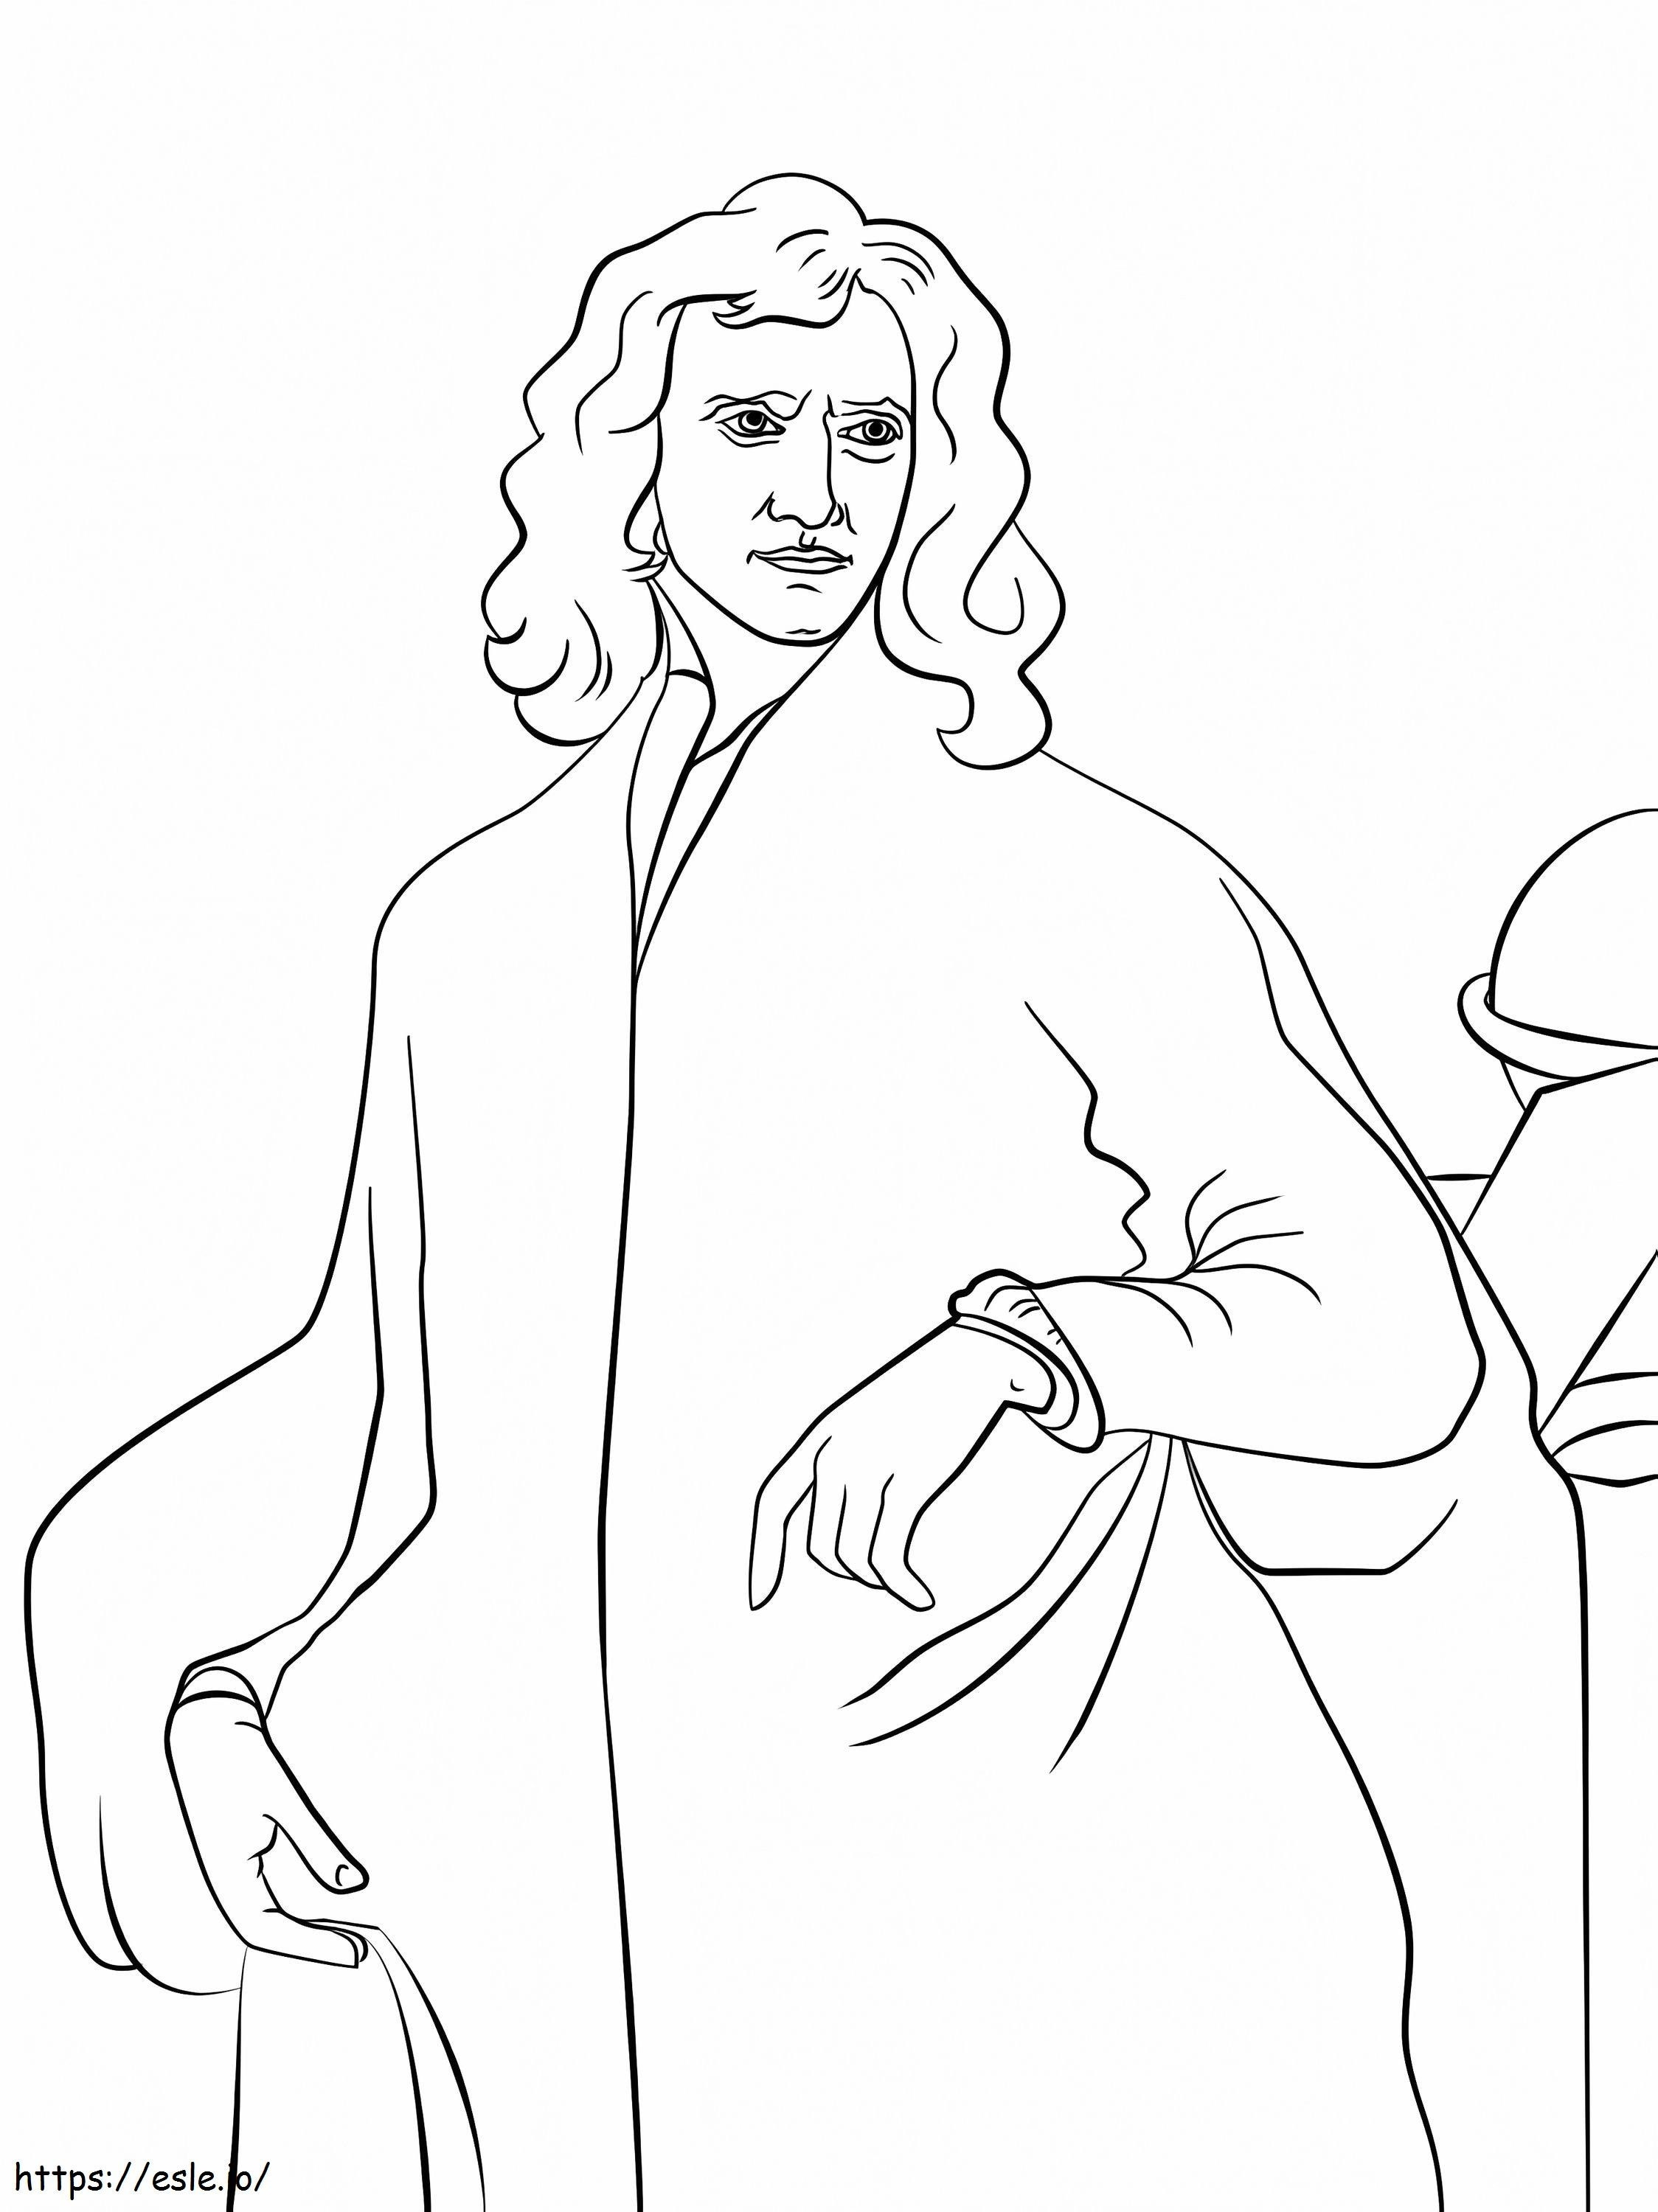 Sir Isaac Newton coloring page